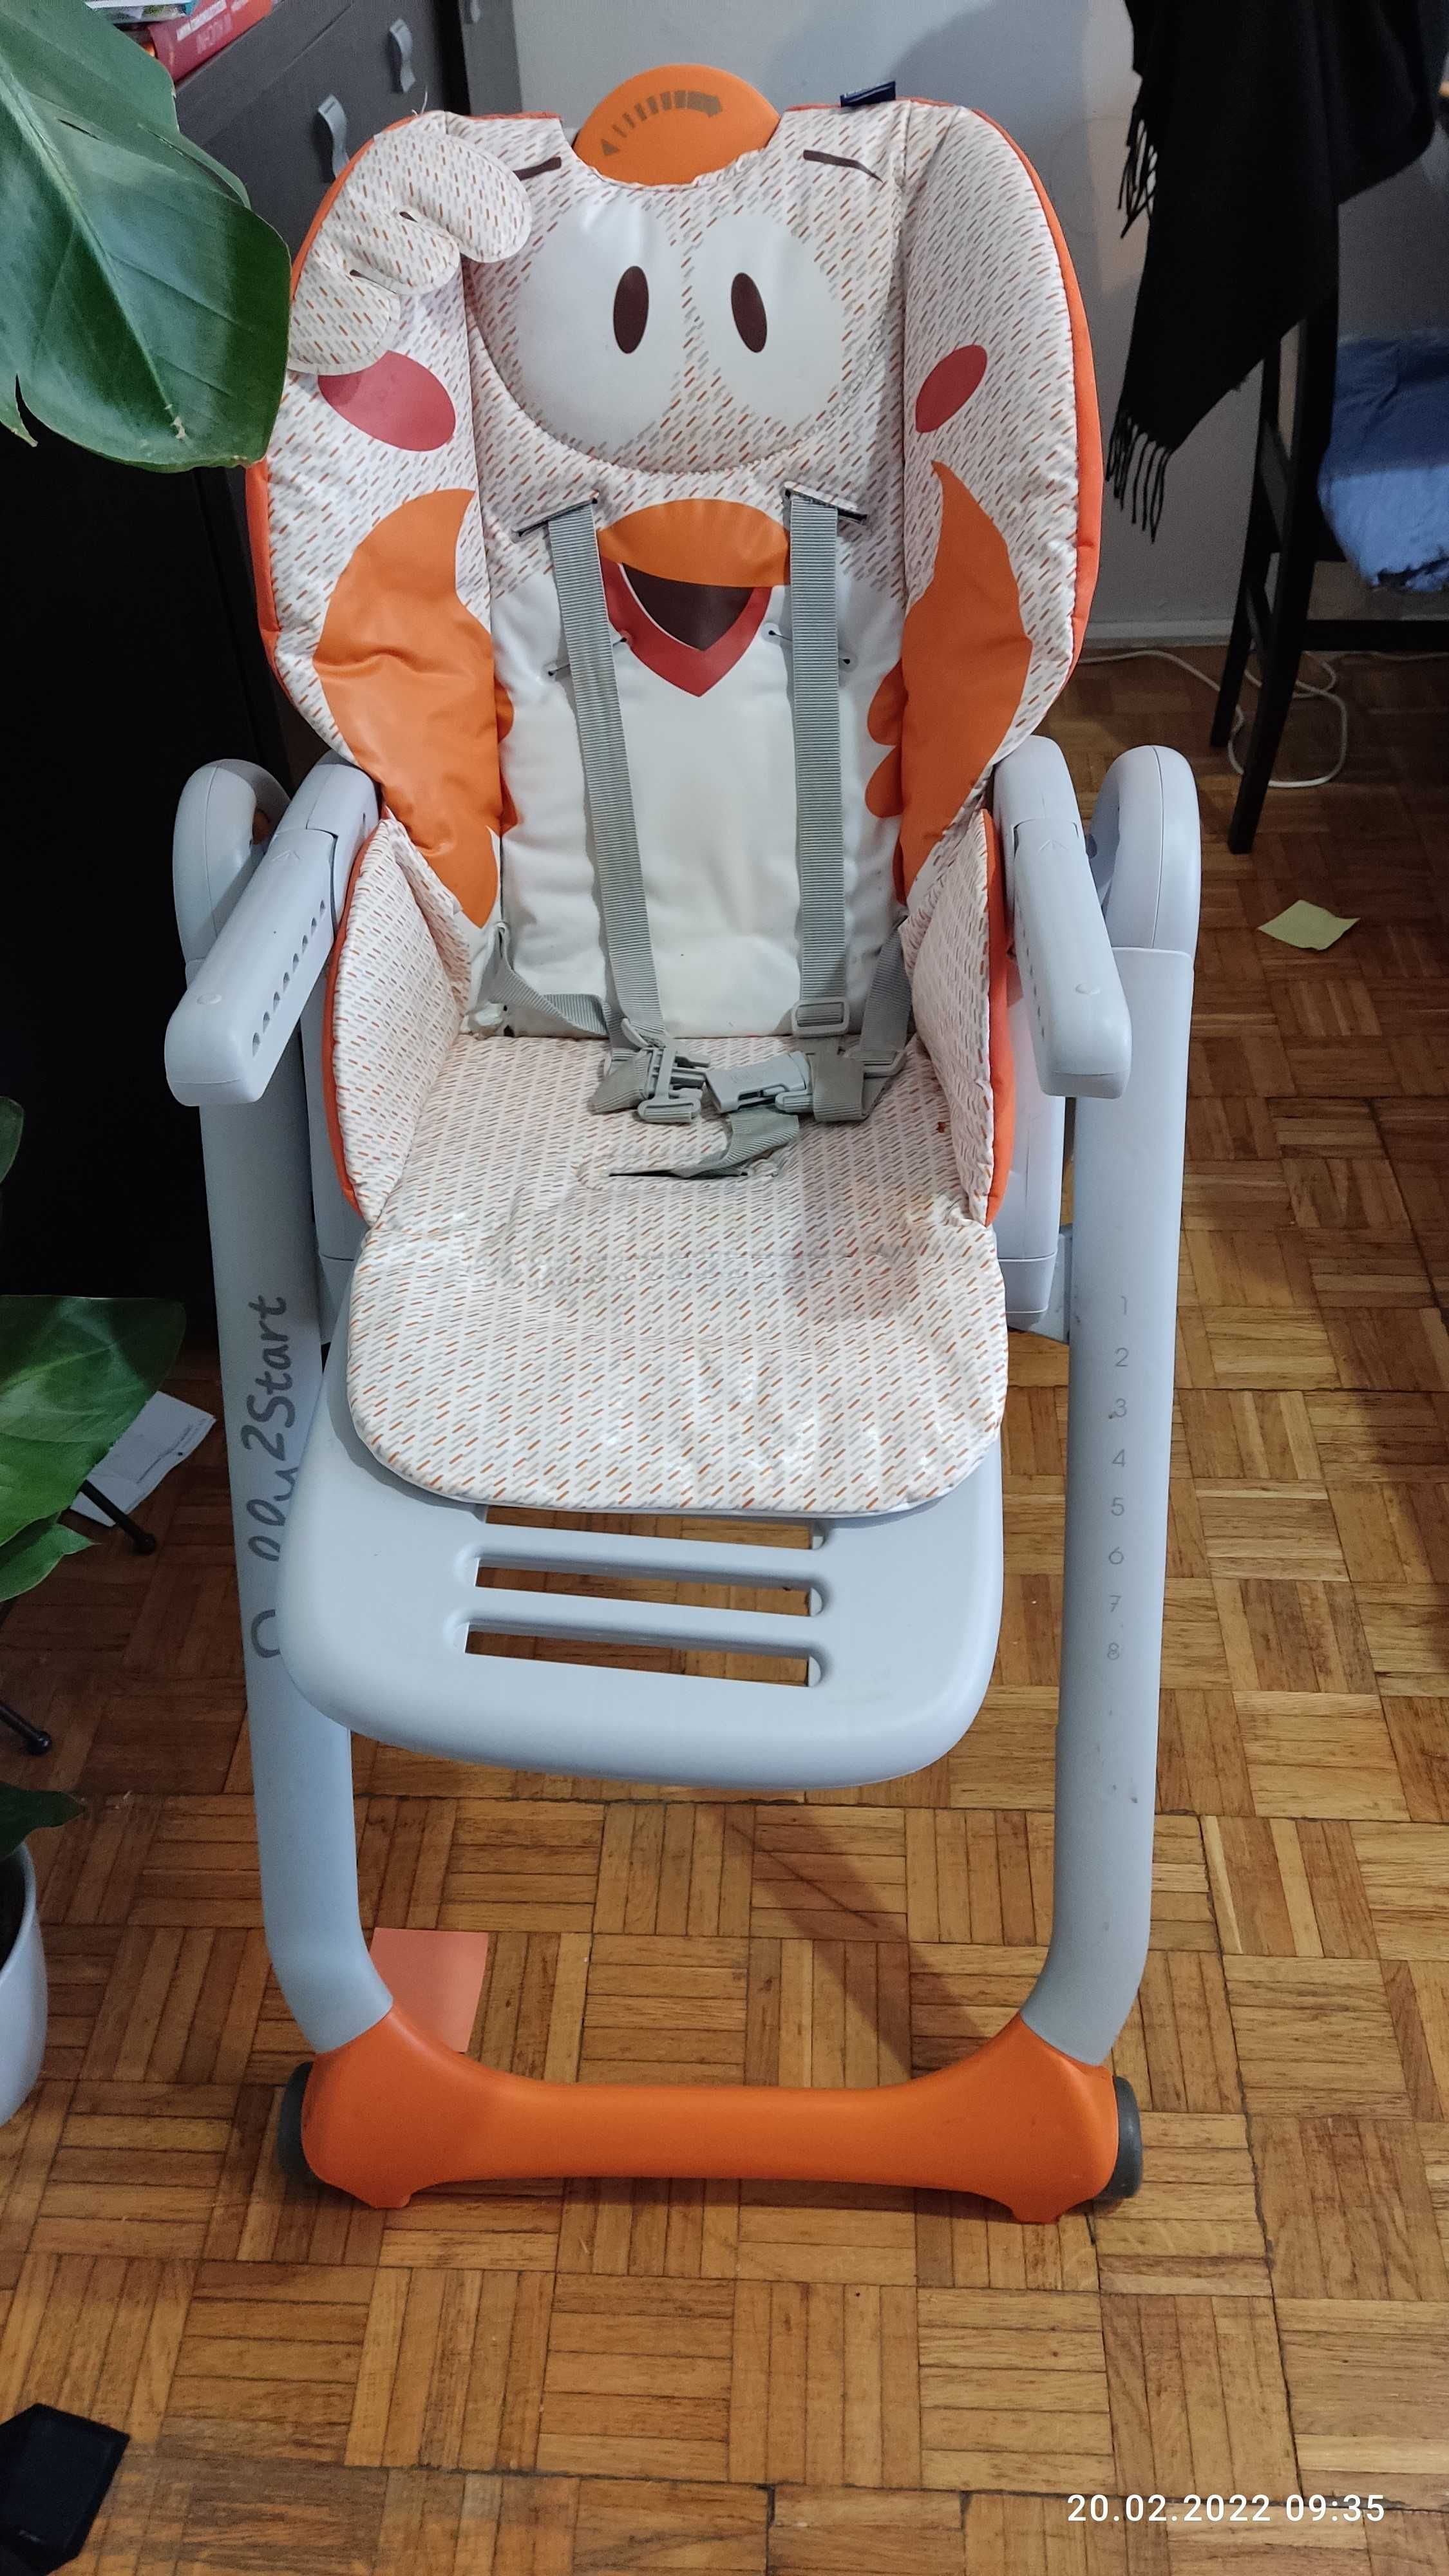 krzesełko do karmienia dla dziecka